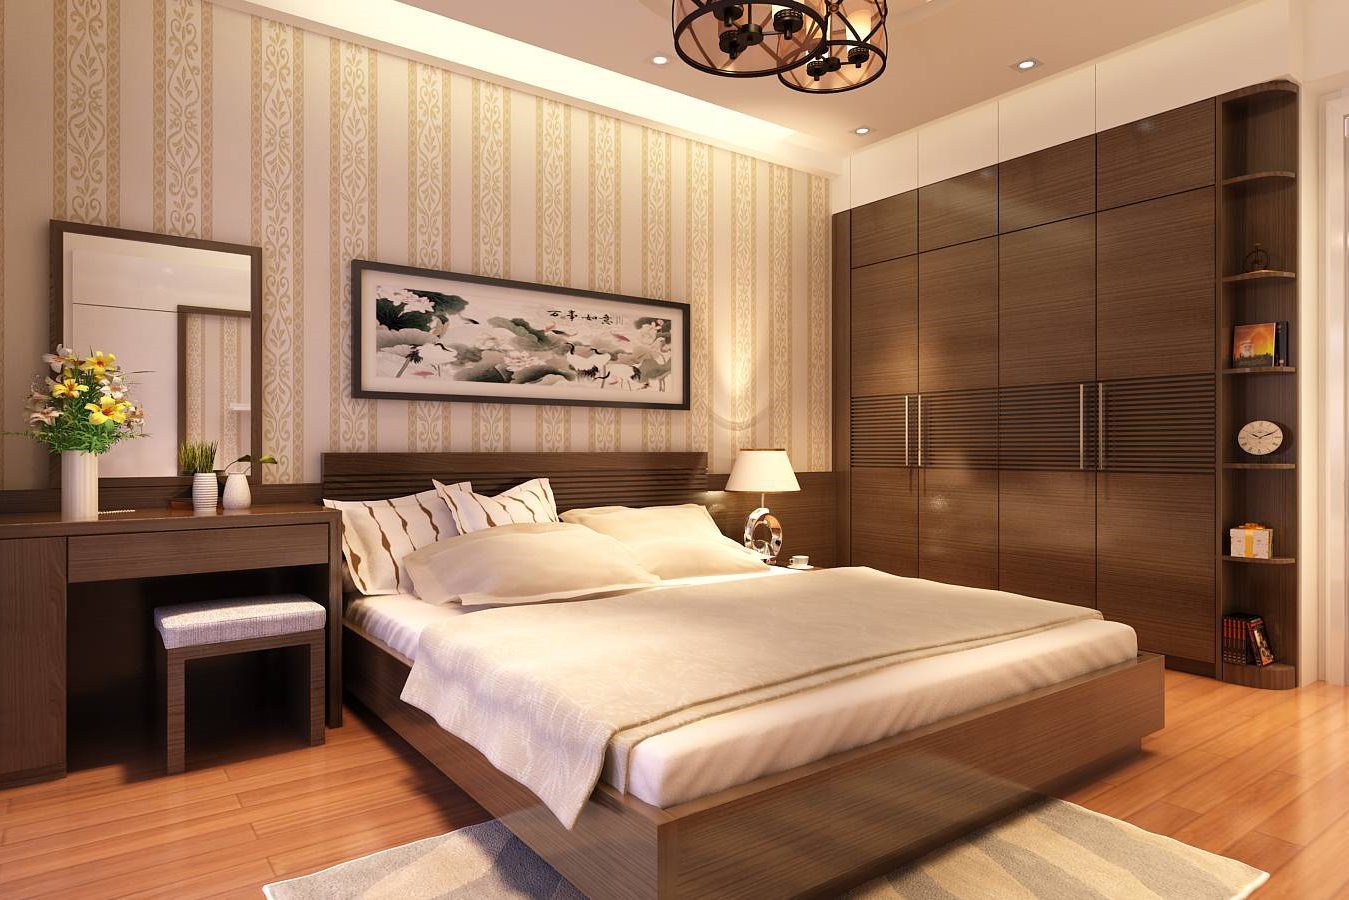 Mẫu thiết kế phòng ngủ cho ông bà sử dụng nội thất gỗ chủ đạo tông màu nâu trầm ấm áp, mang lại cảm giác thư giãn, dễ chịu.